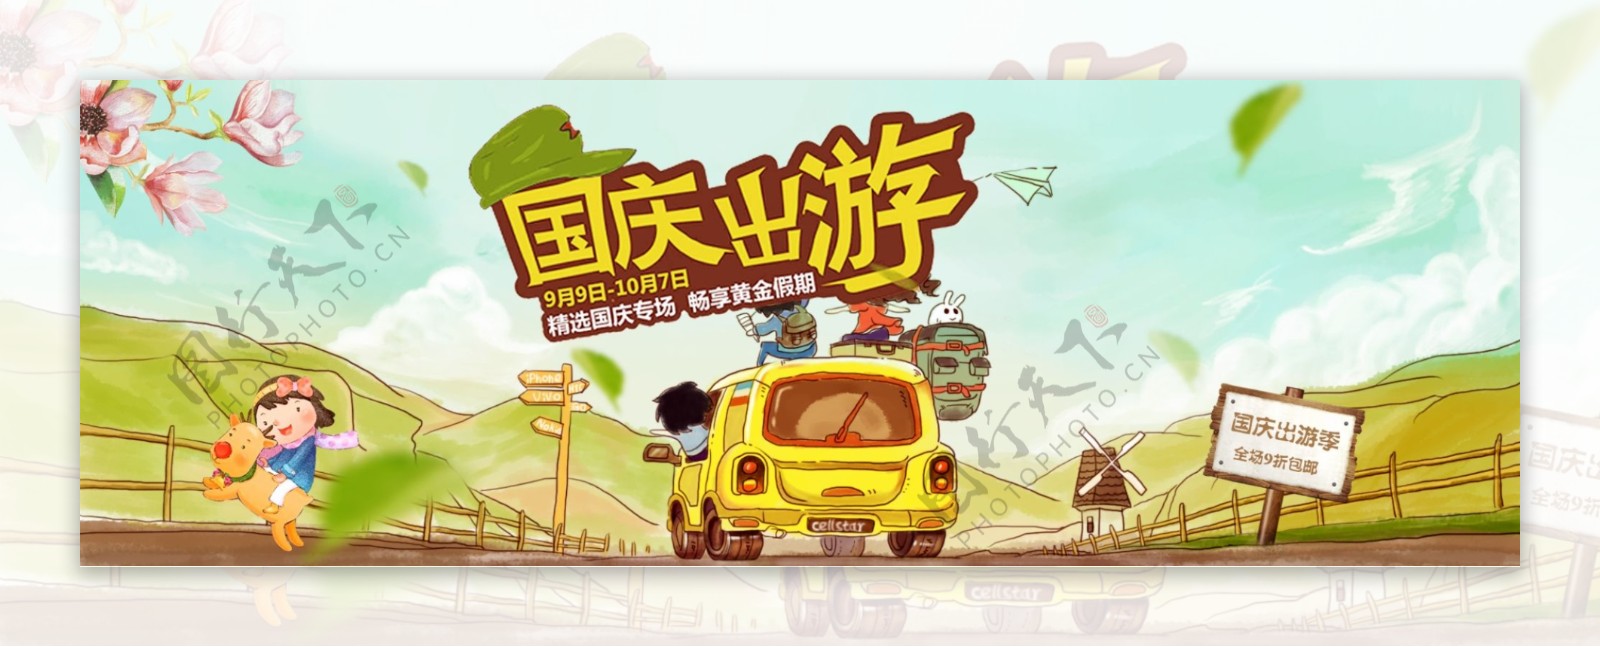 电商淘宝天猫国庆出游季促销海报banner模板设计旅游